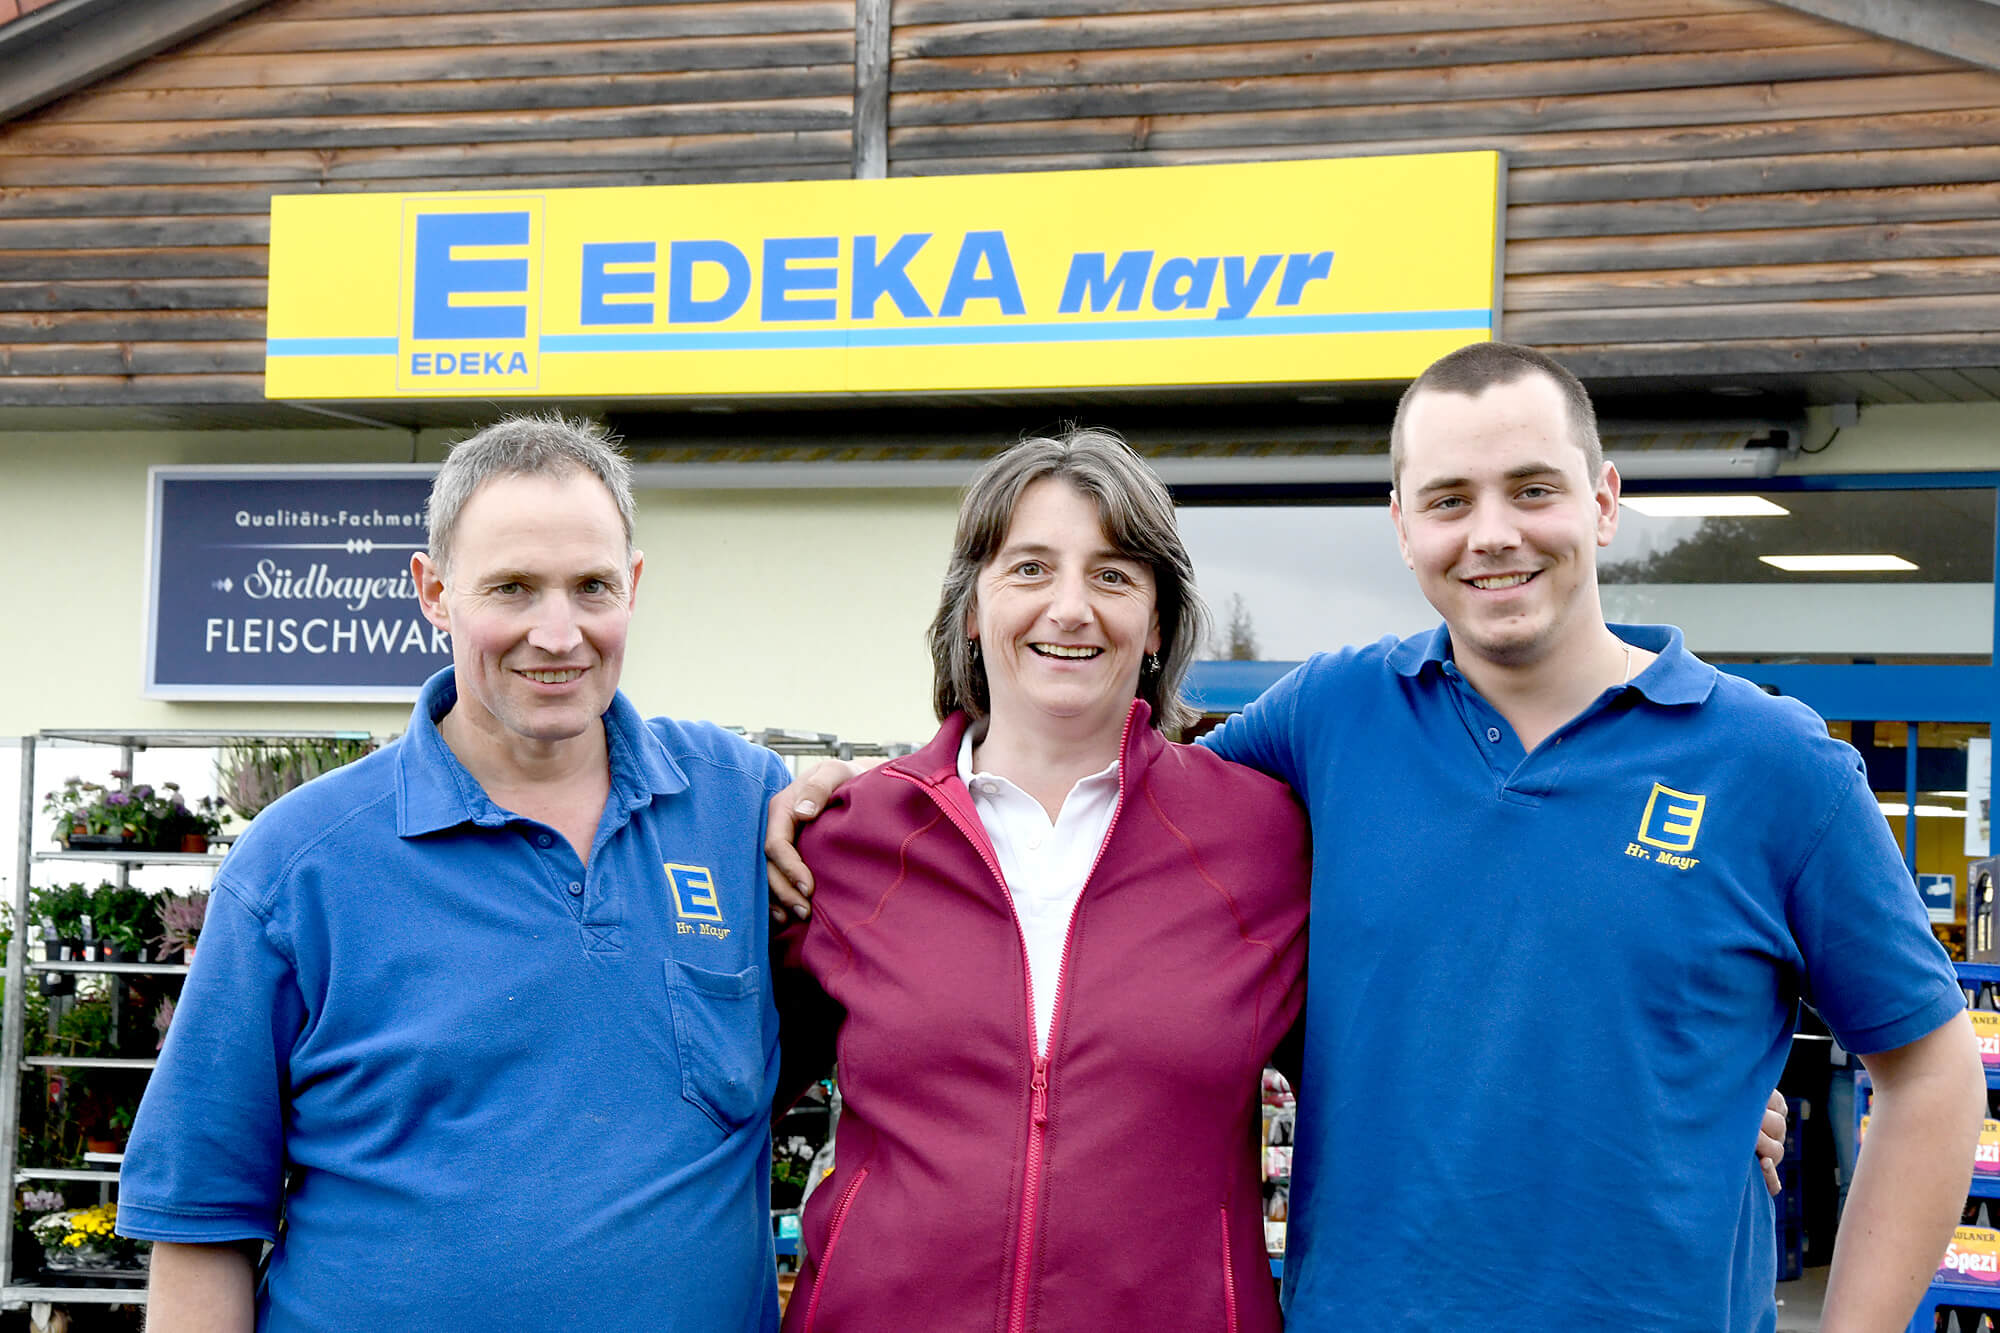 Die Inhaber: Martina und Wolfgang Mayr
Der Inhaber des Marktes, Herr Mayr, erlernte ursprünglich den Beruf des Metzgers. Im Jahr 1993 wurde jedoch das Gebäude mitsamt EDEKA Markt übernommen. Noch heute besteht dieser am selben Standort und wird von Frau Mayr geleitet.